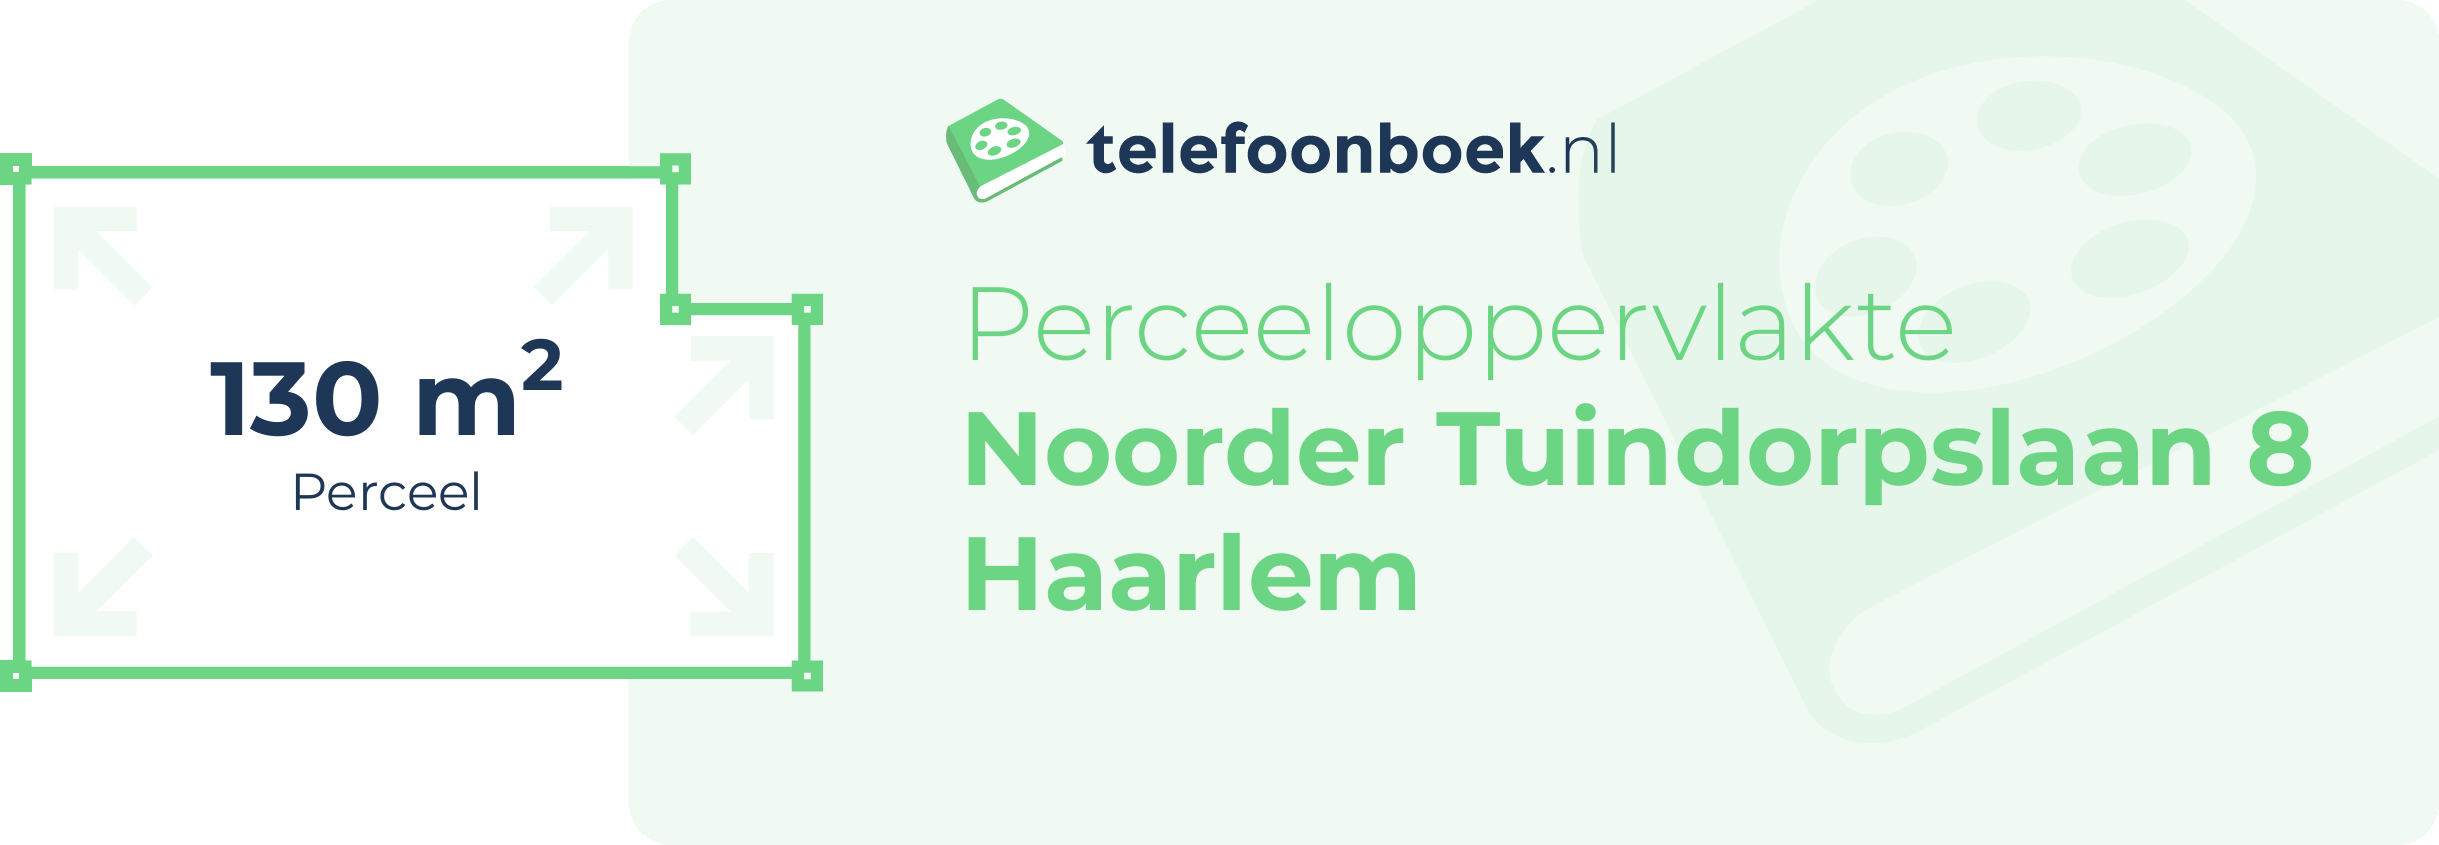 Perceeloppervlakte Noorder Tuindorpslaan 8 Haarlem